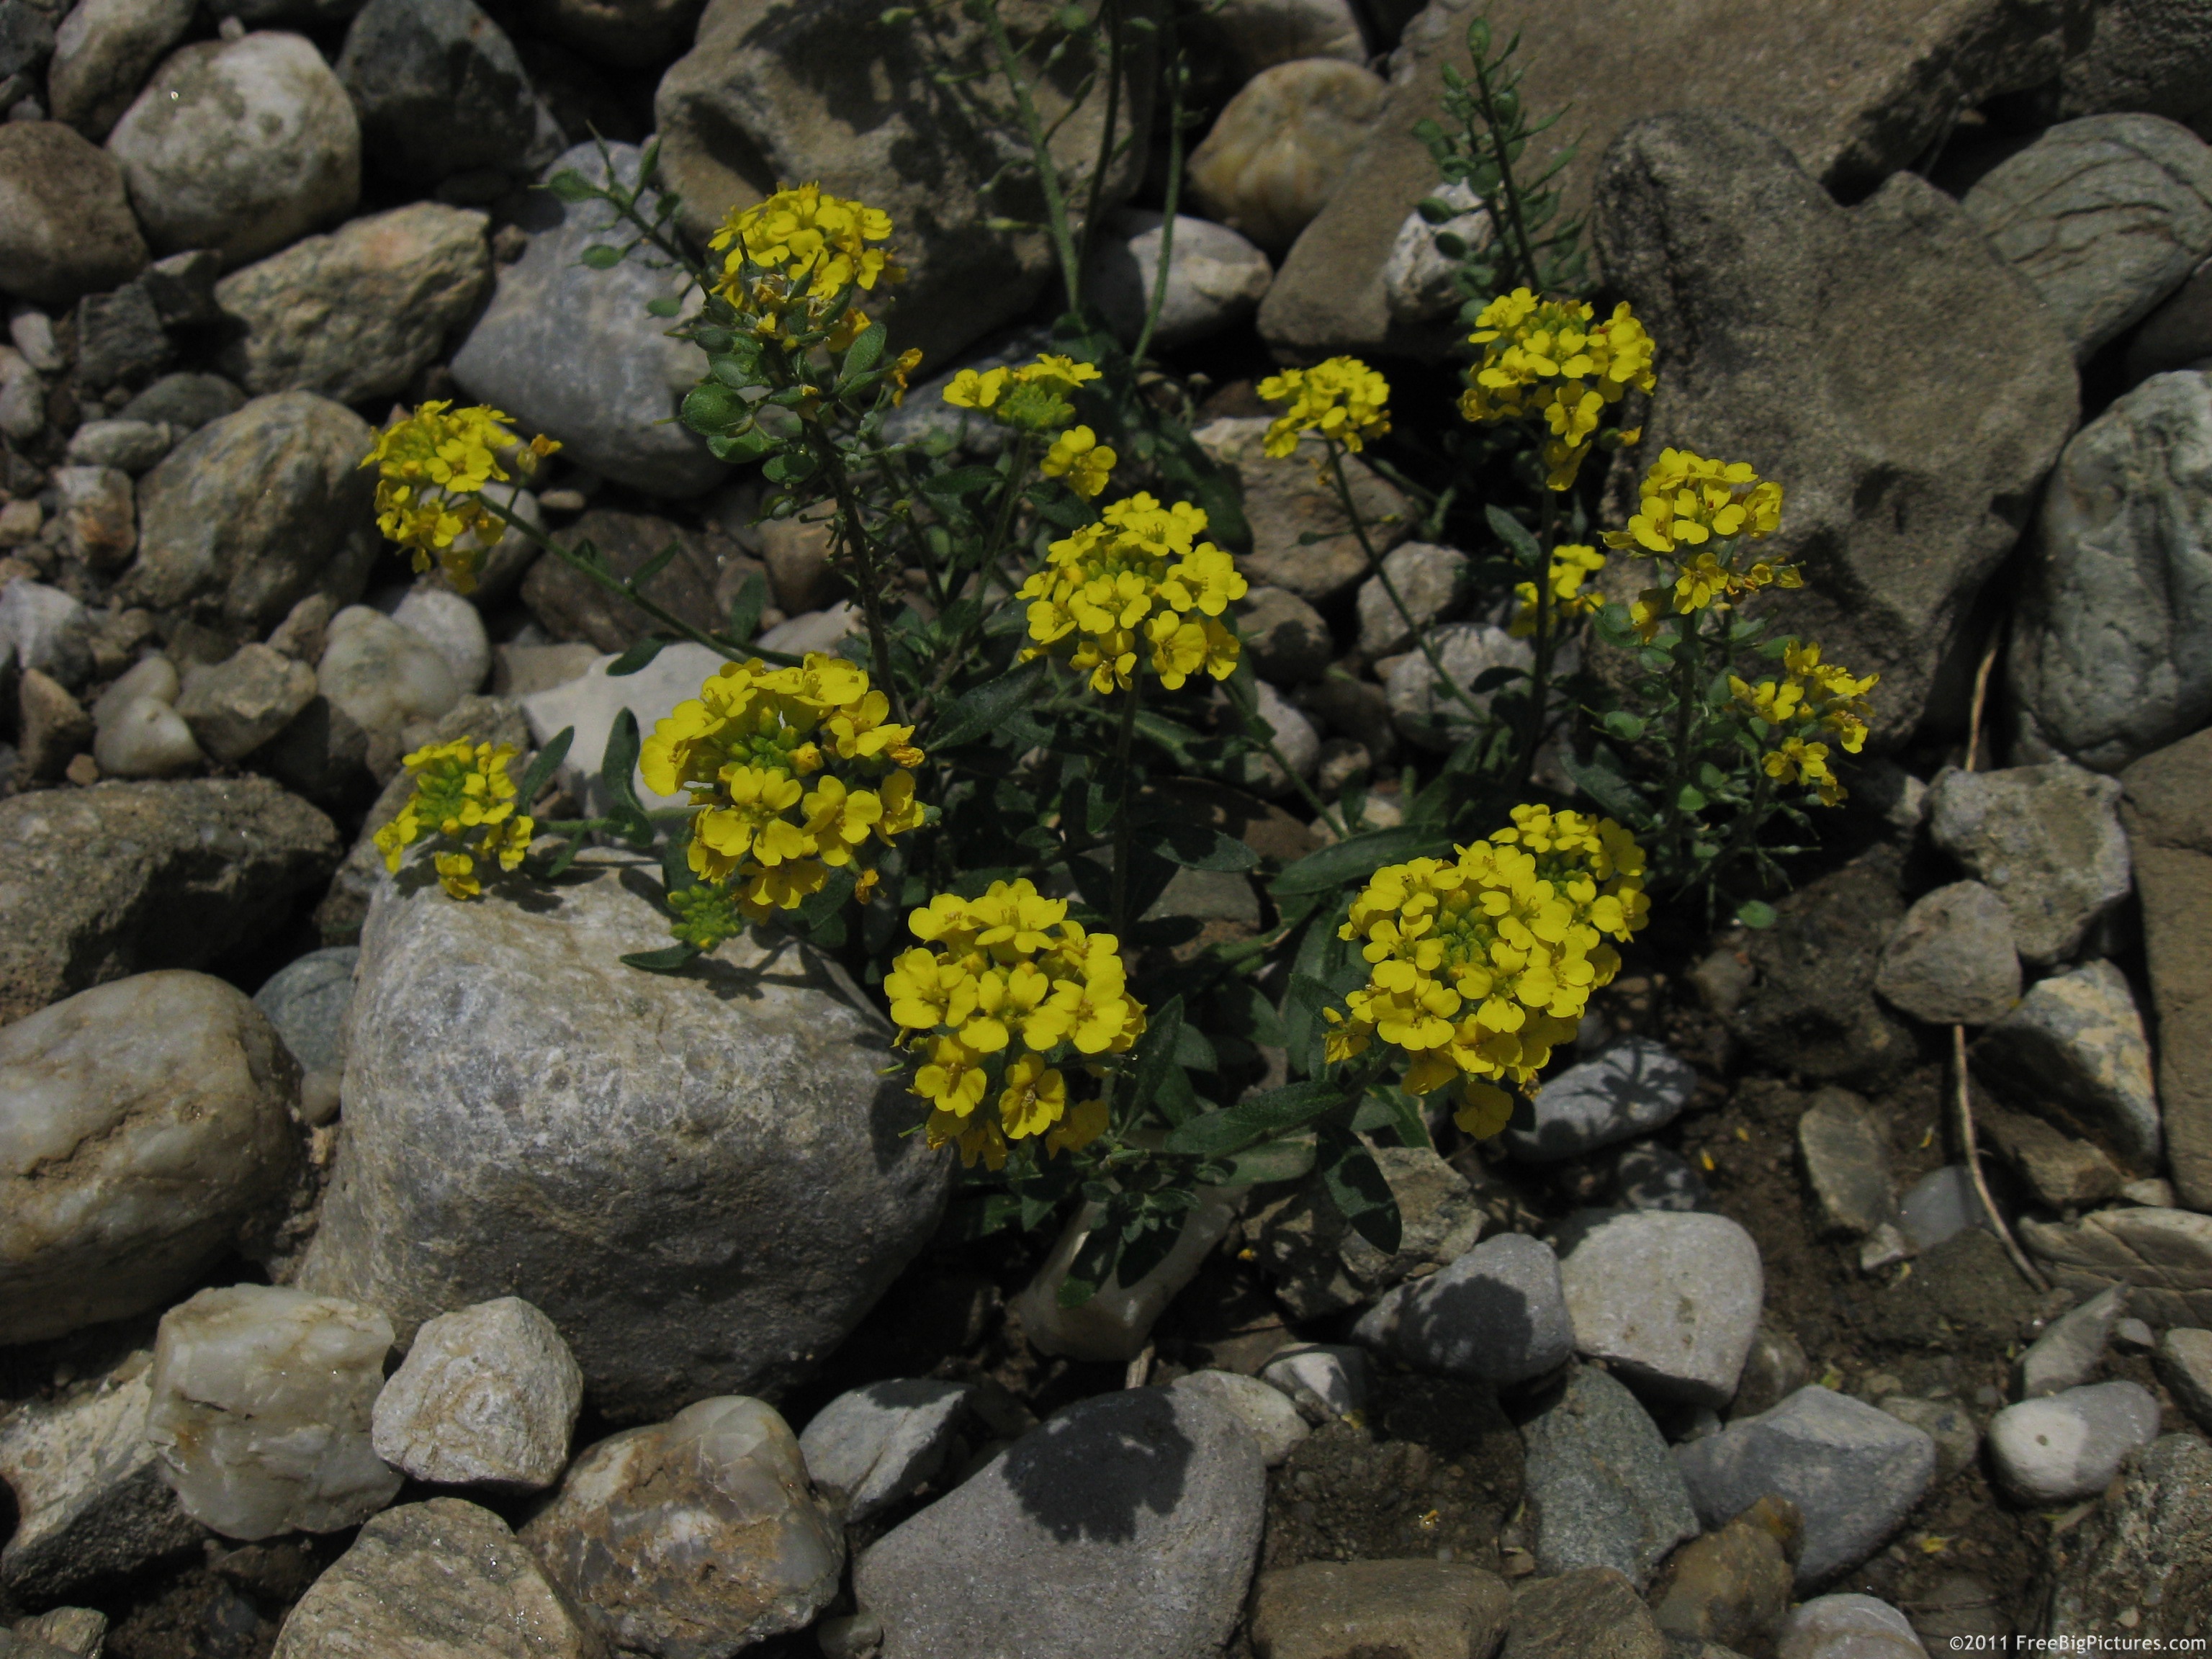 Erysimum (wallflowers) encountered in alpine meadows